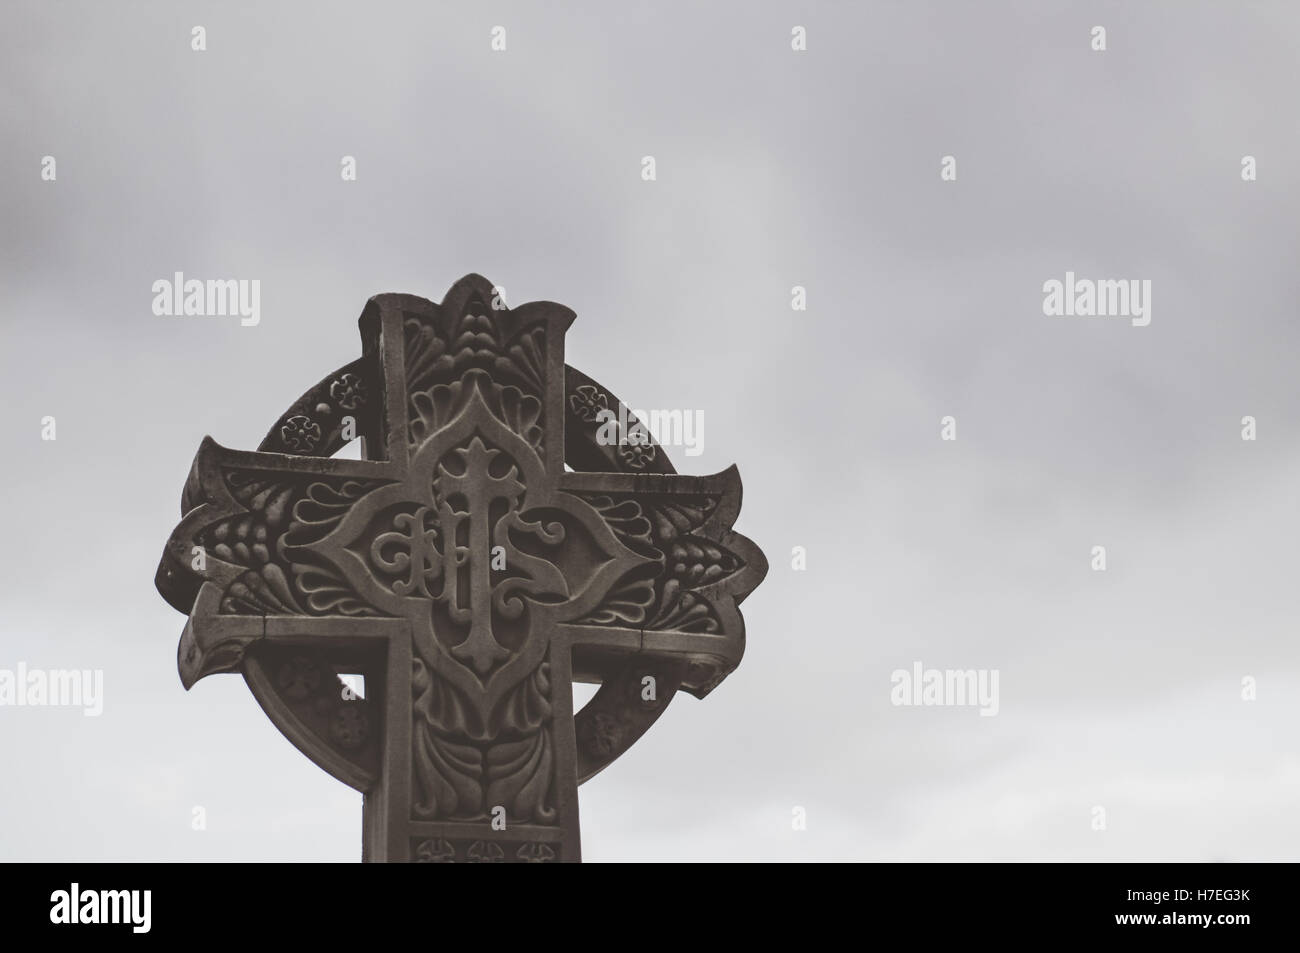 Croix en pierre sculptée avec des symboles religieux Banque D'Images